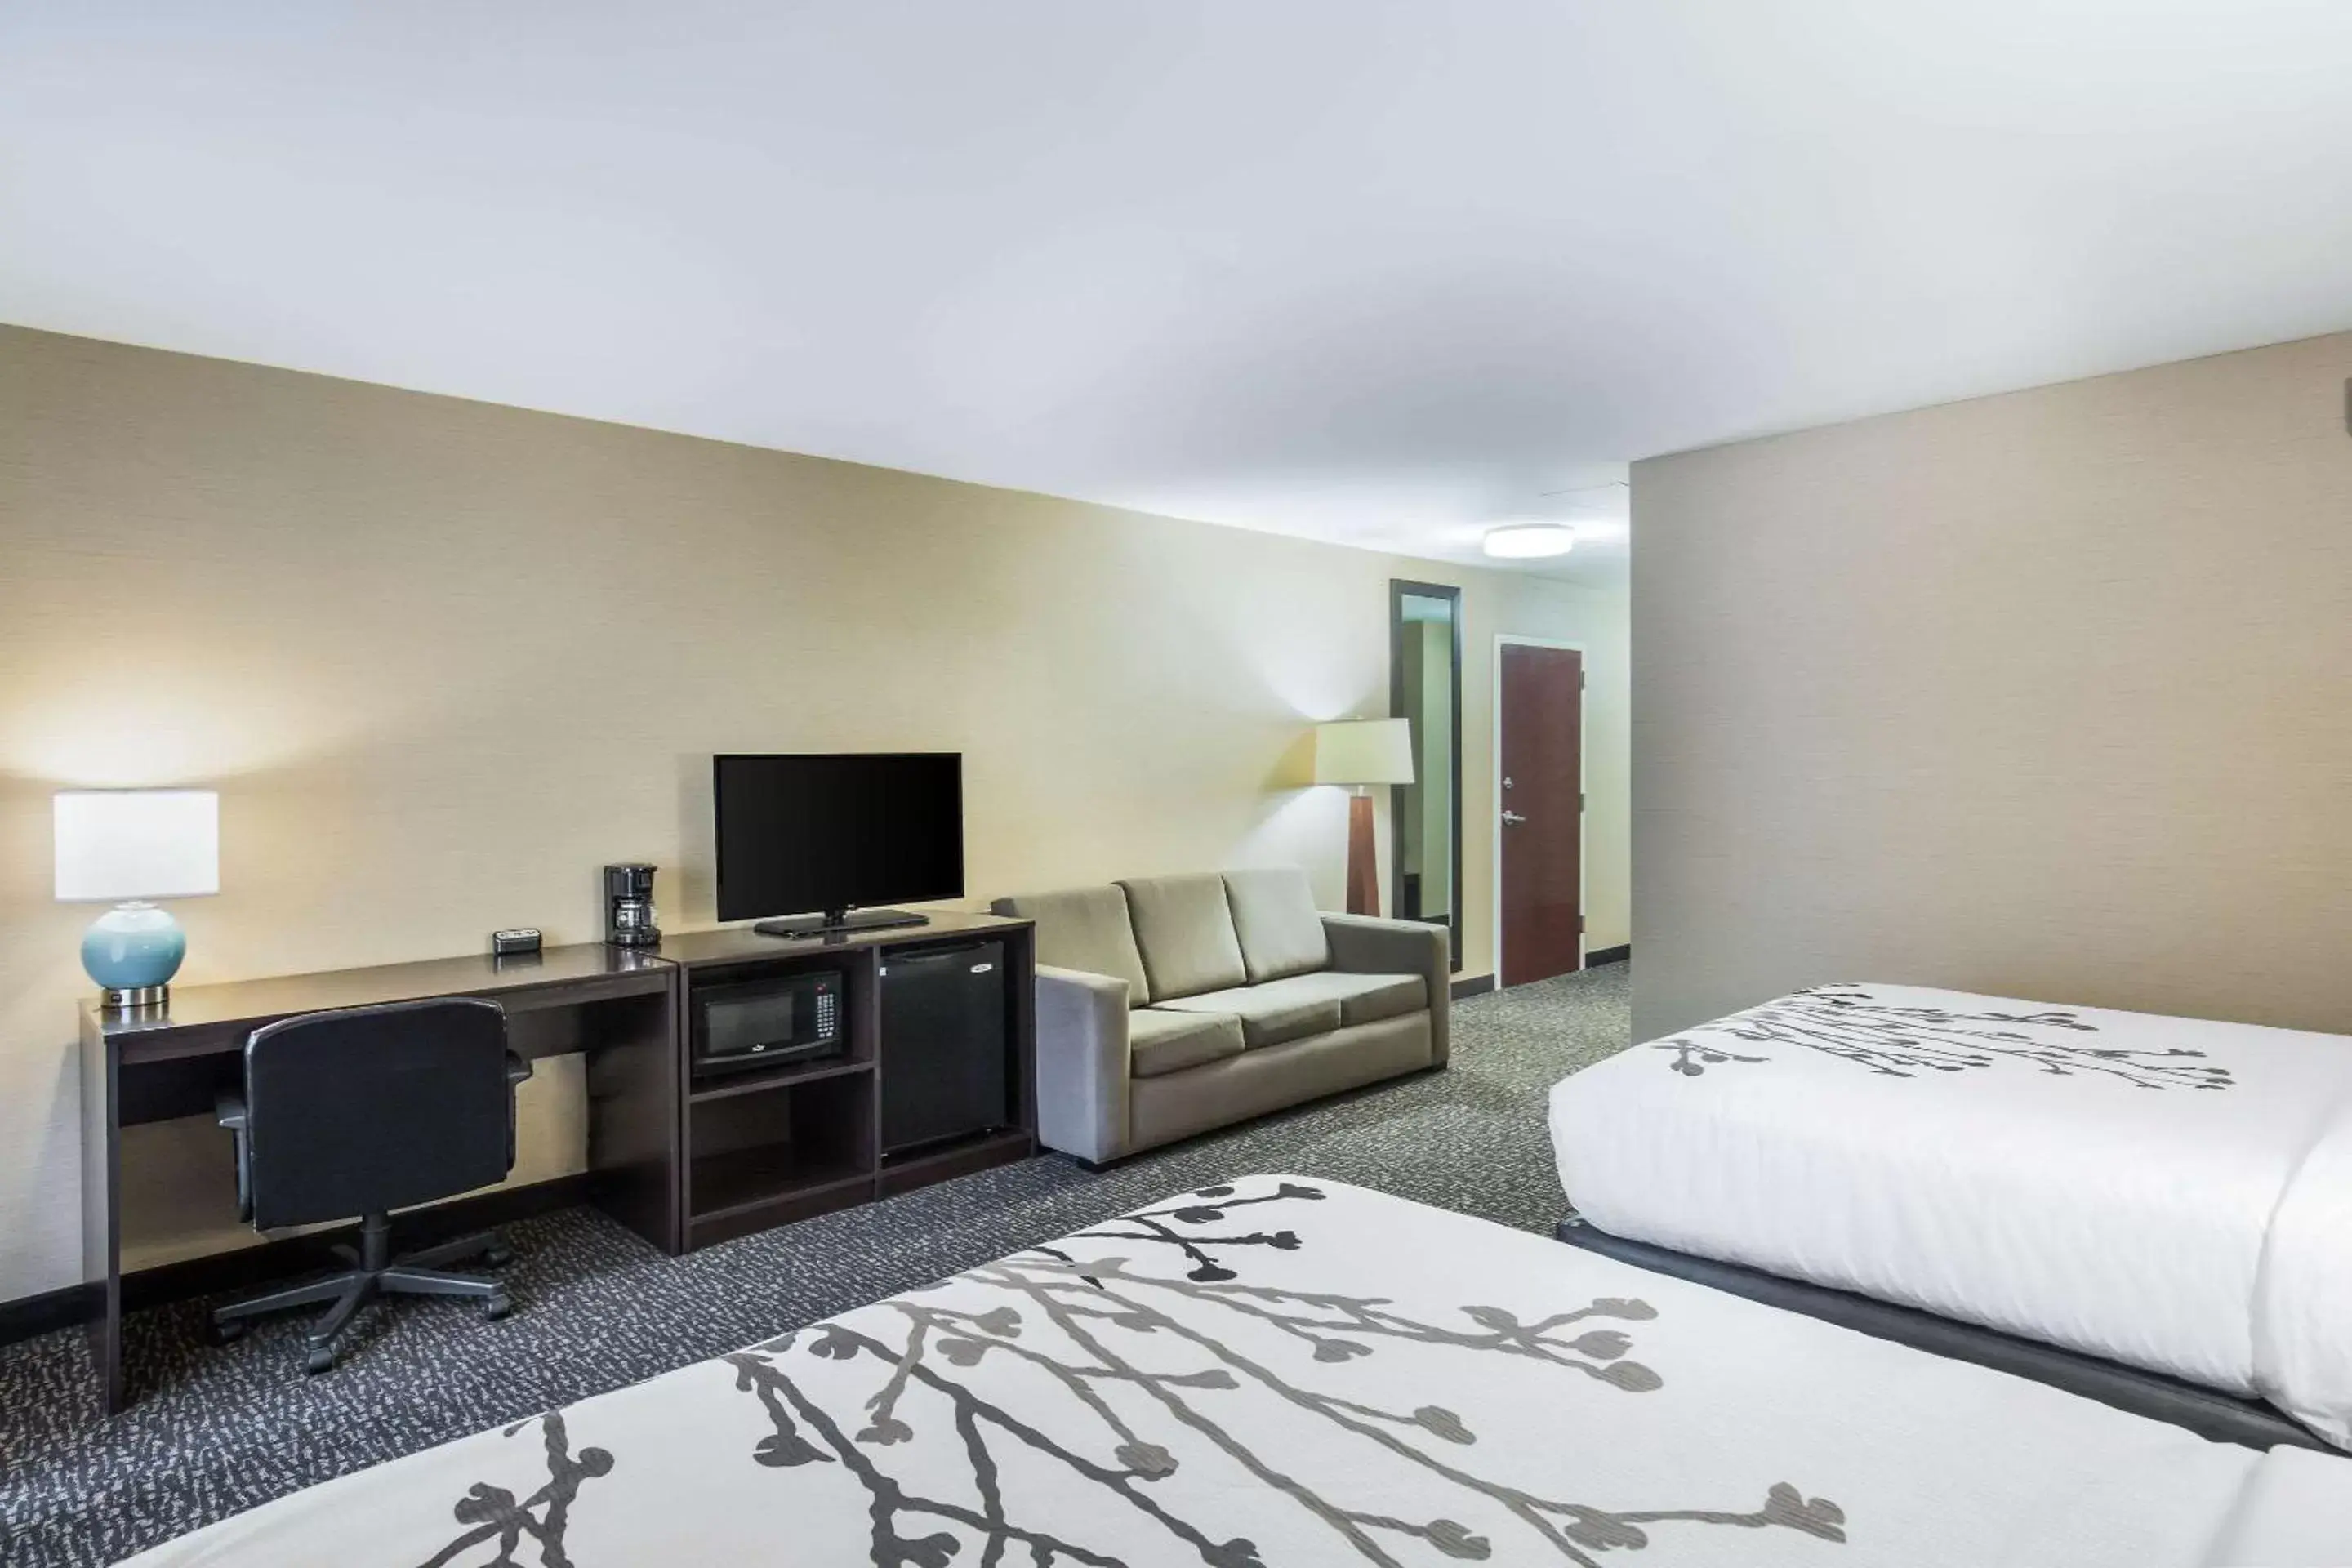 Bedroom, TV/Entertainment Center in Sleep Inn & Suites Scranton Dunmore